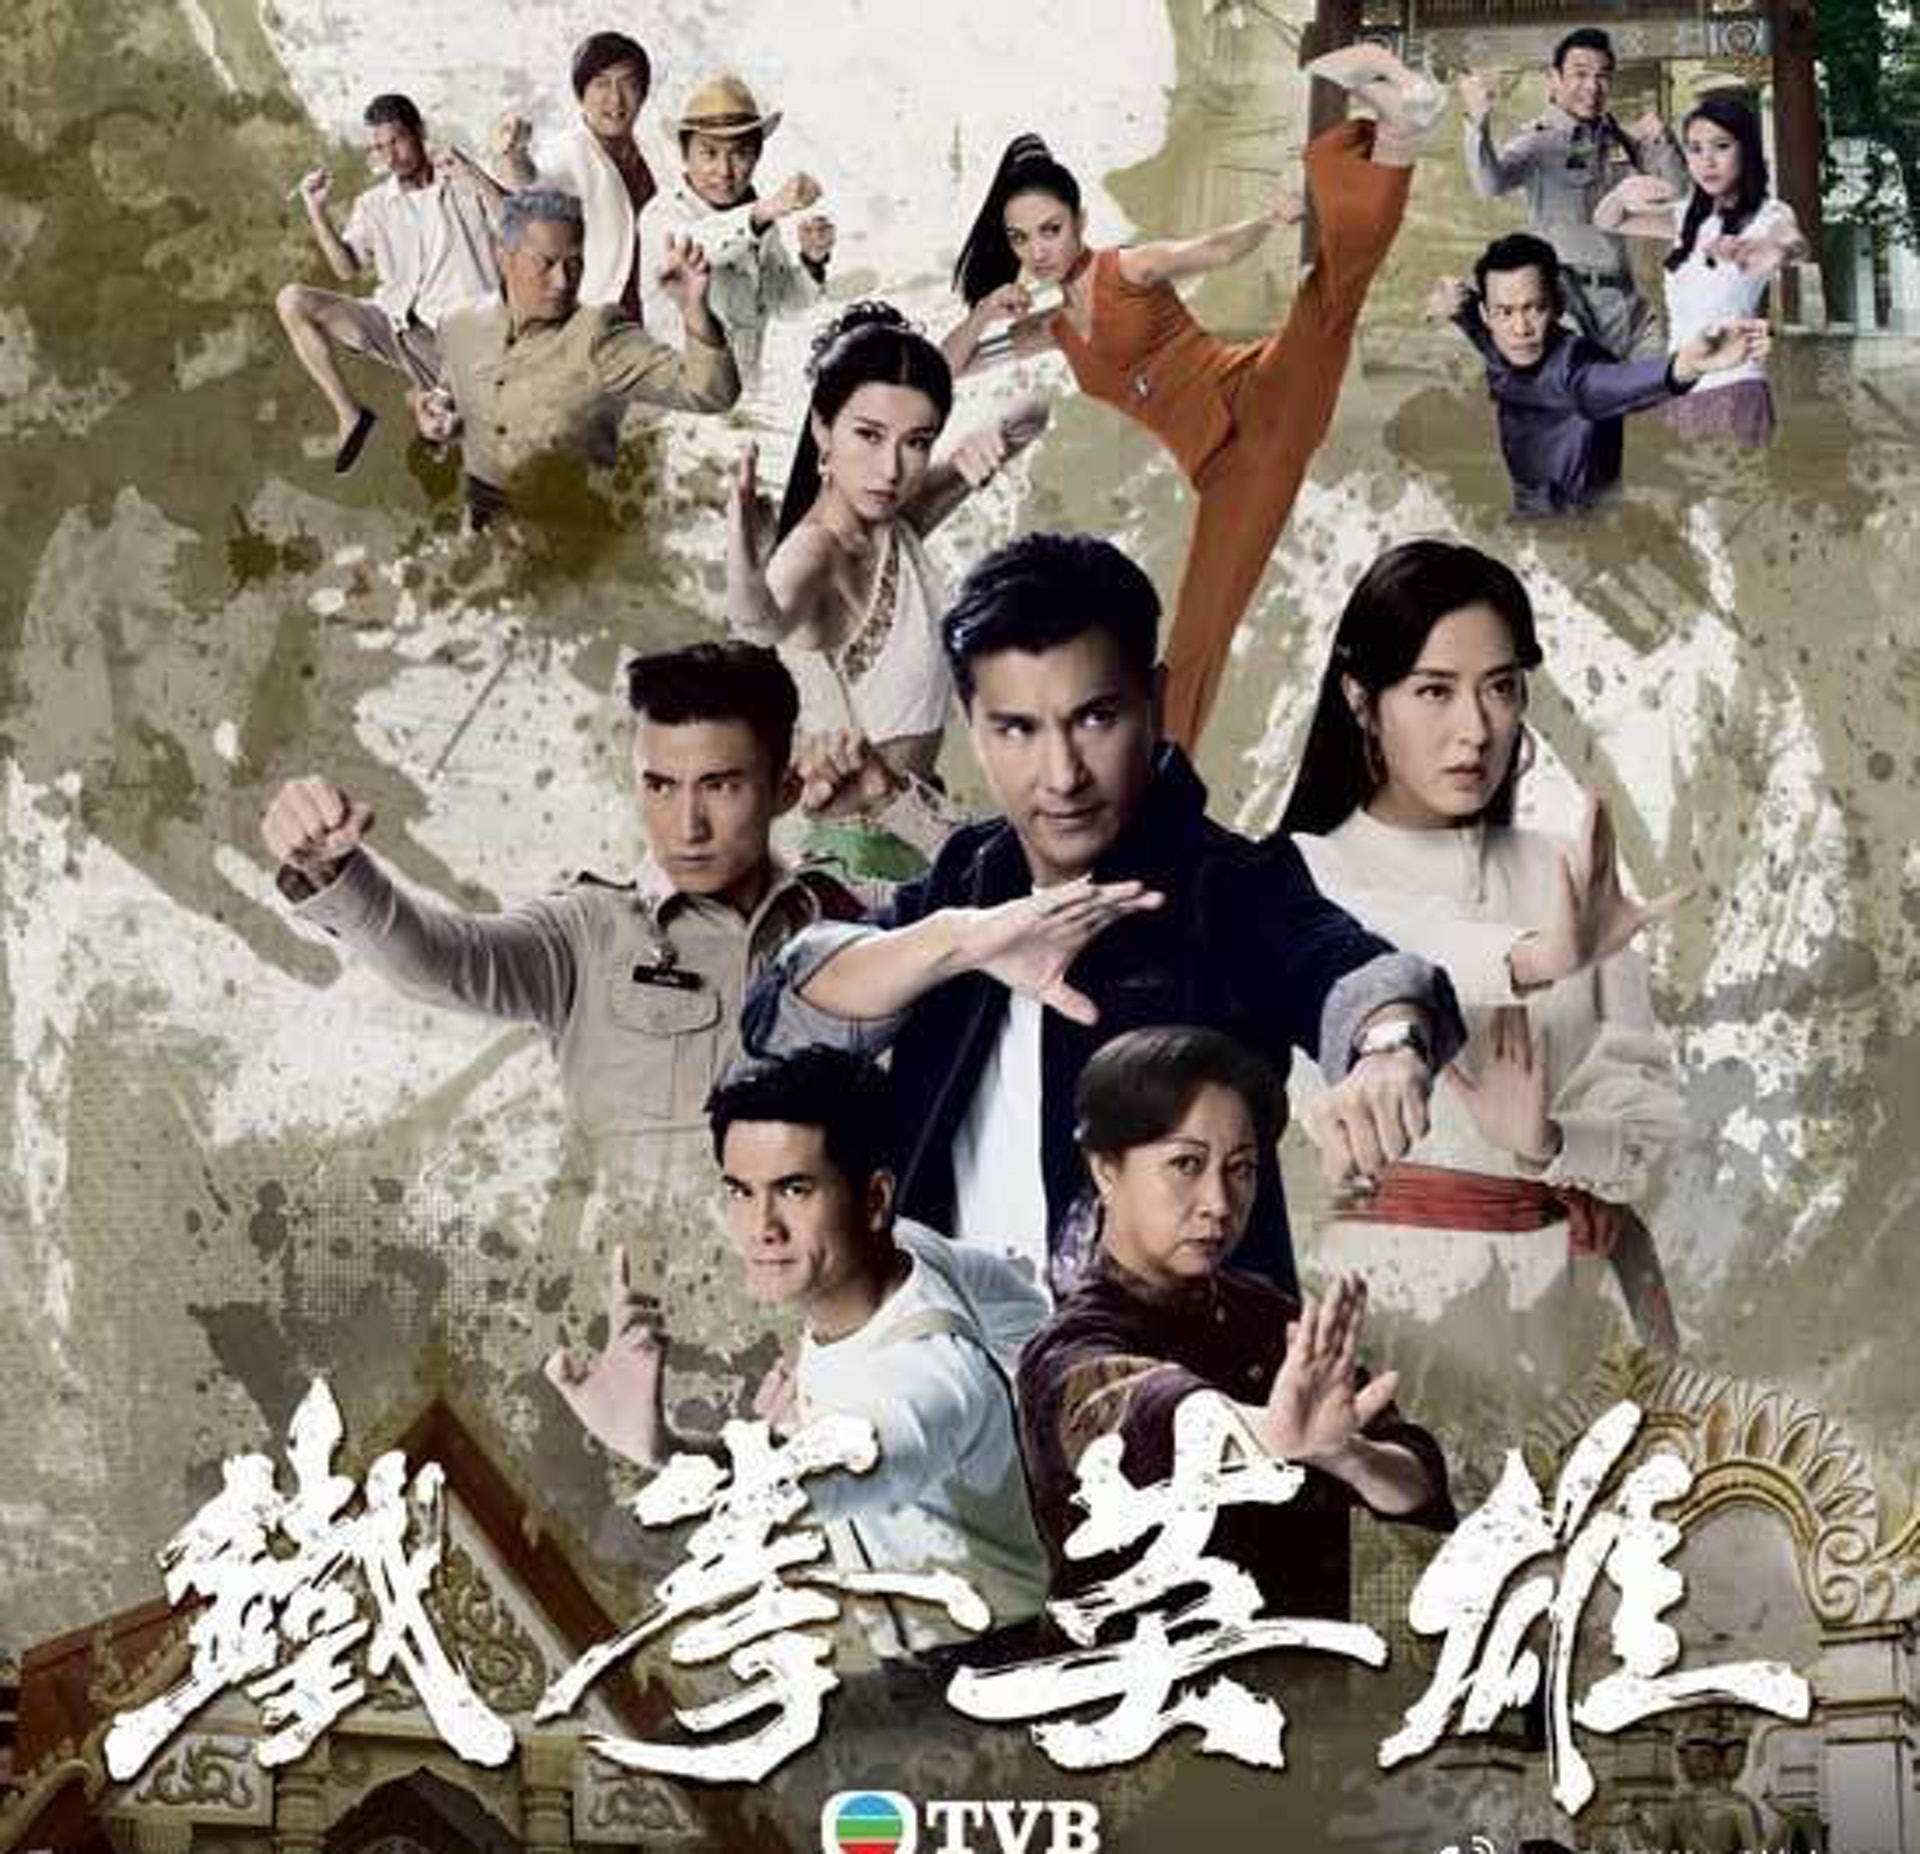 铁拳英雄TVB图片